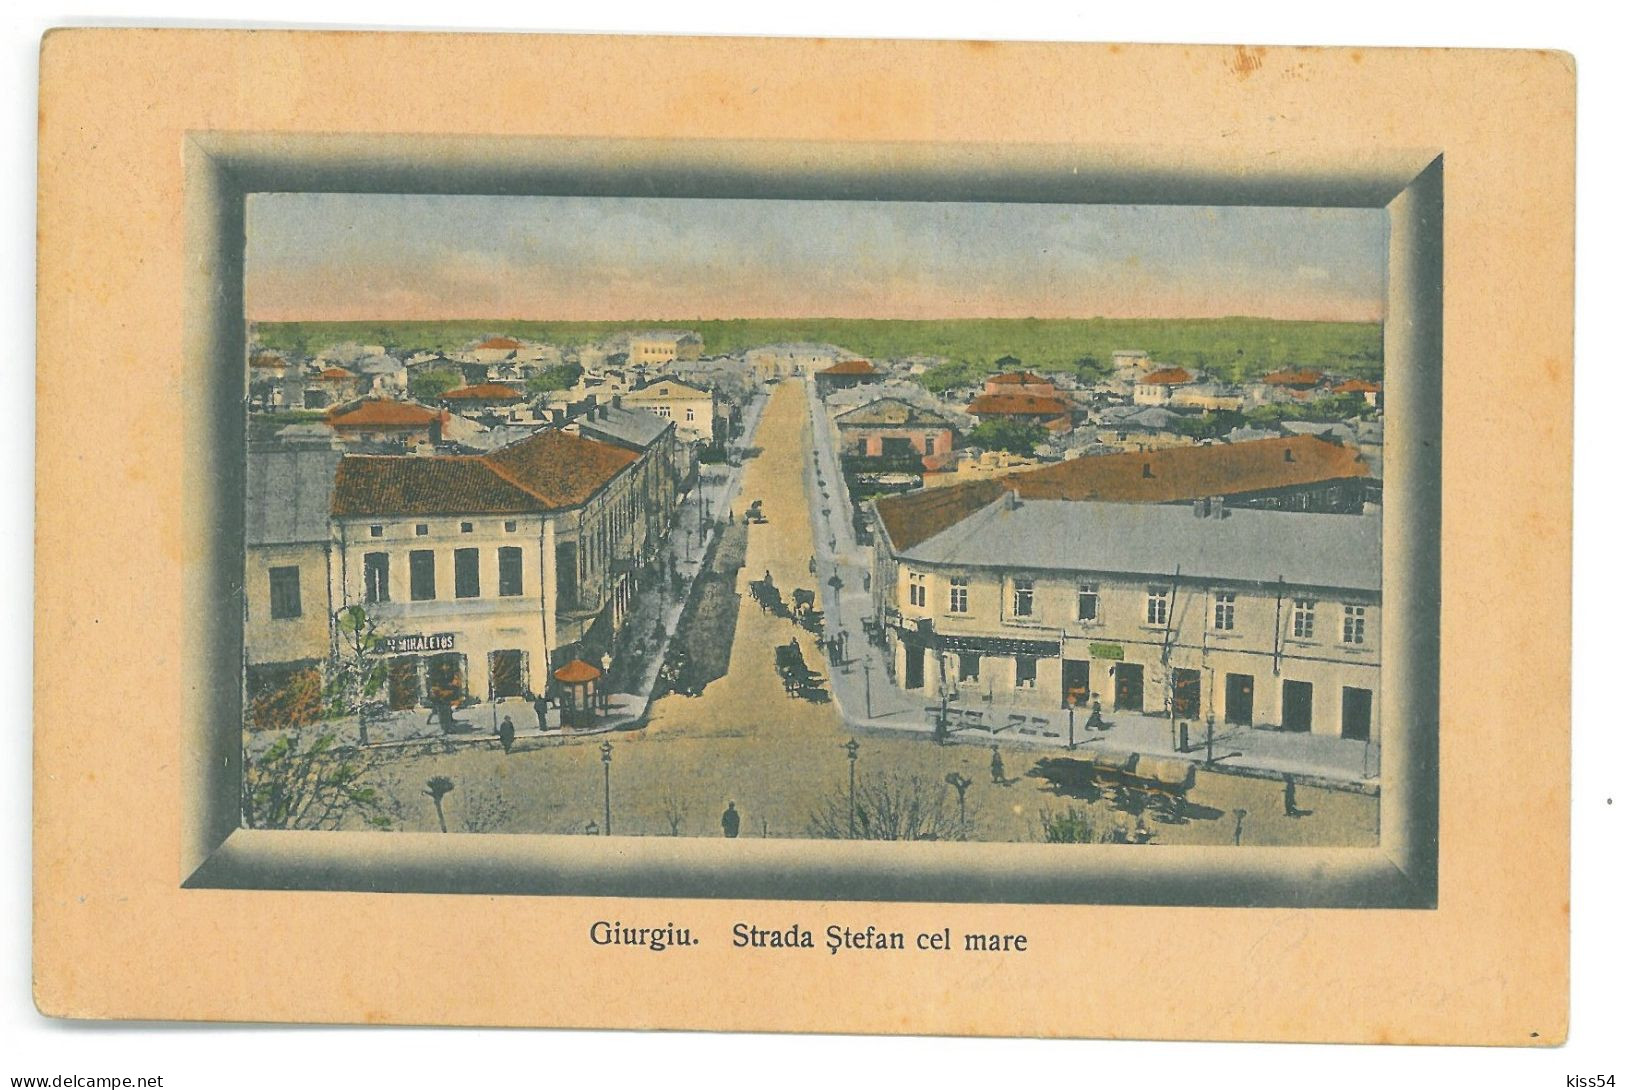 RO - 25270 GIURGIU, Stefan Cel Mare Street, RAMA, Romania - Old Postcard - Used - 1912 - Rumania